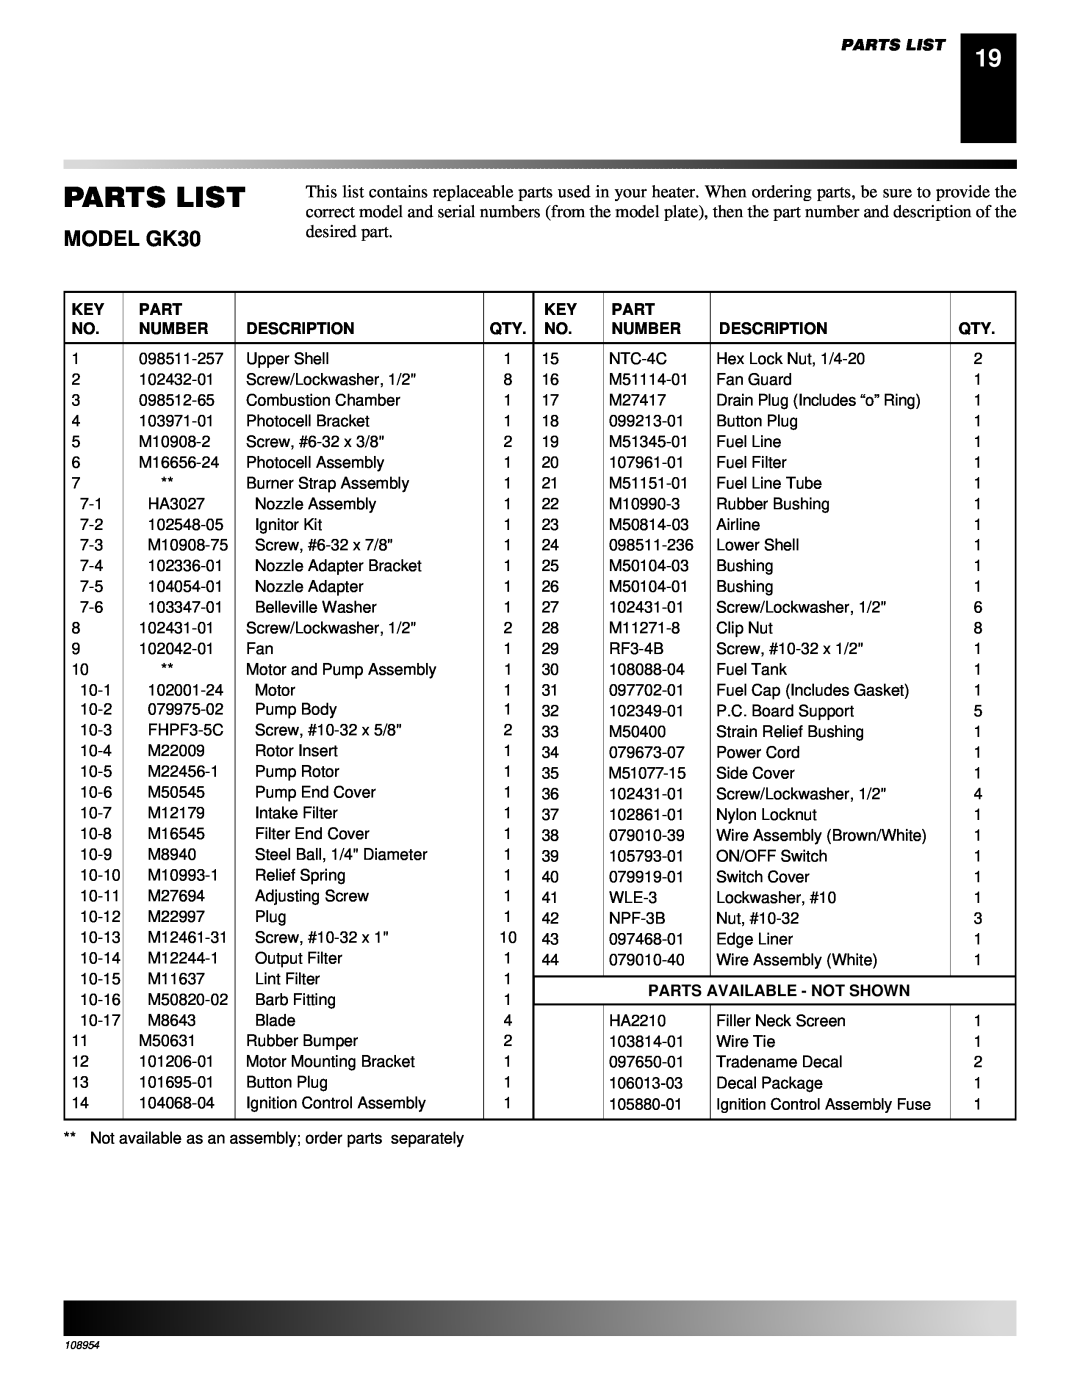 Desa GK20 owner manual Parts List, MODEL GK30, 098511-257 